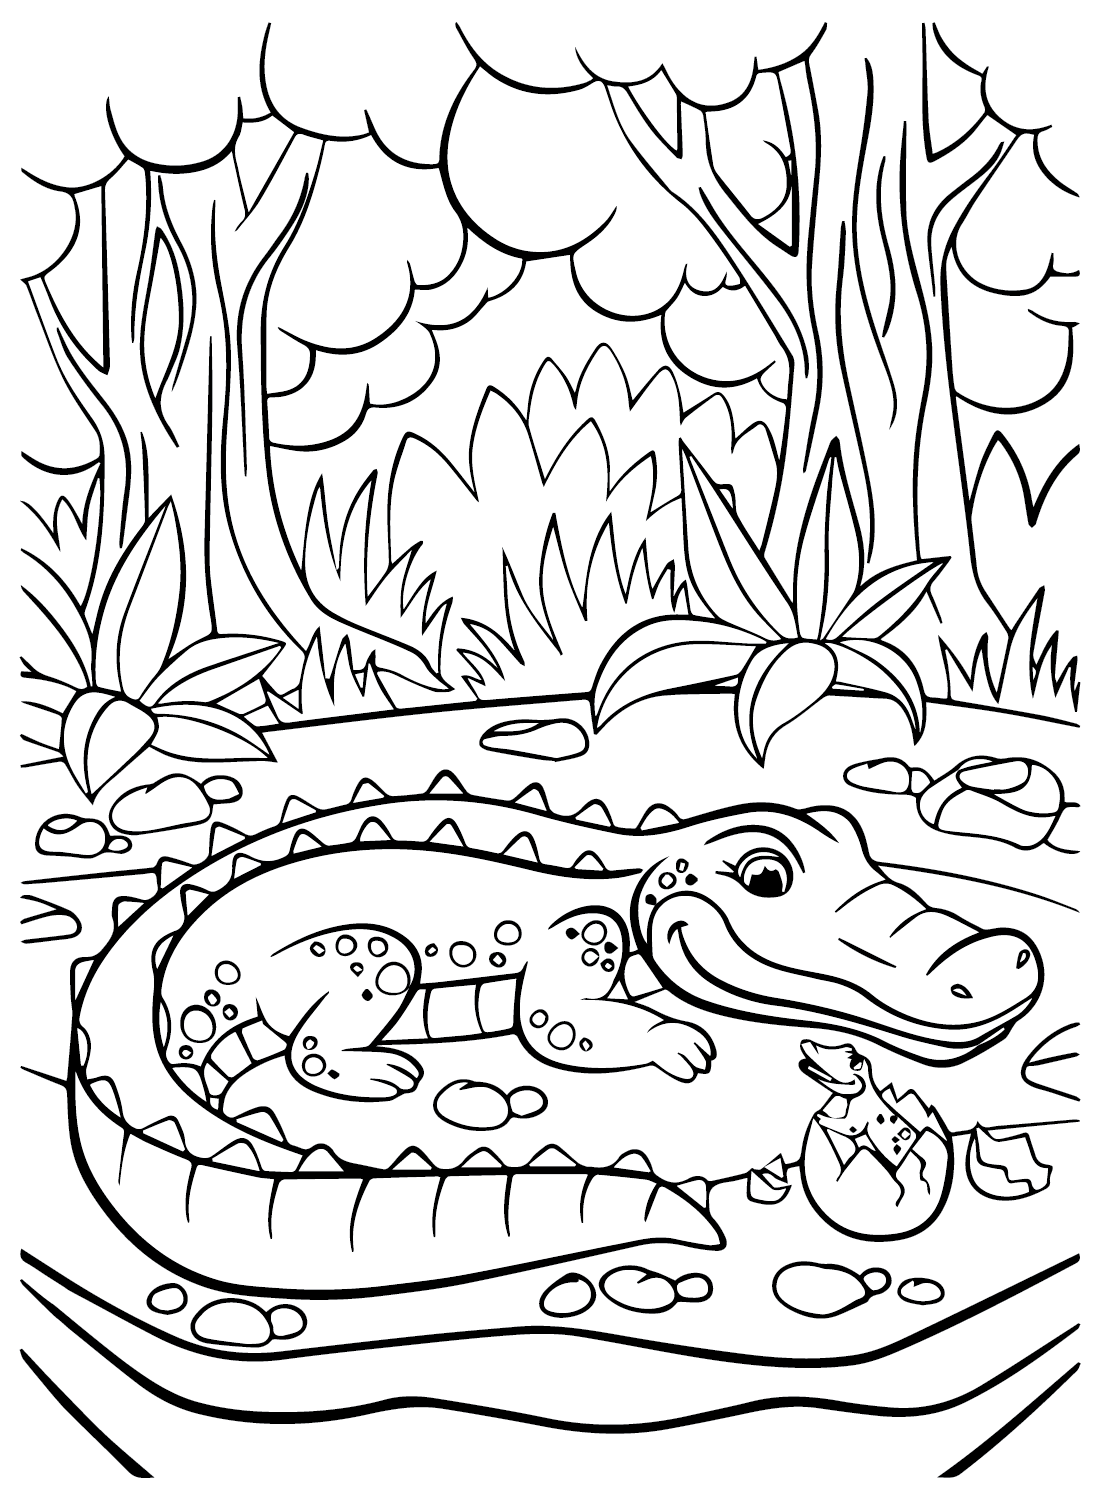 Imagens de crocodilo para colorir de crocodilo